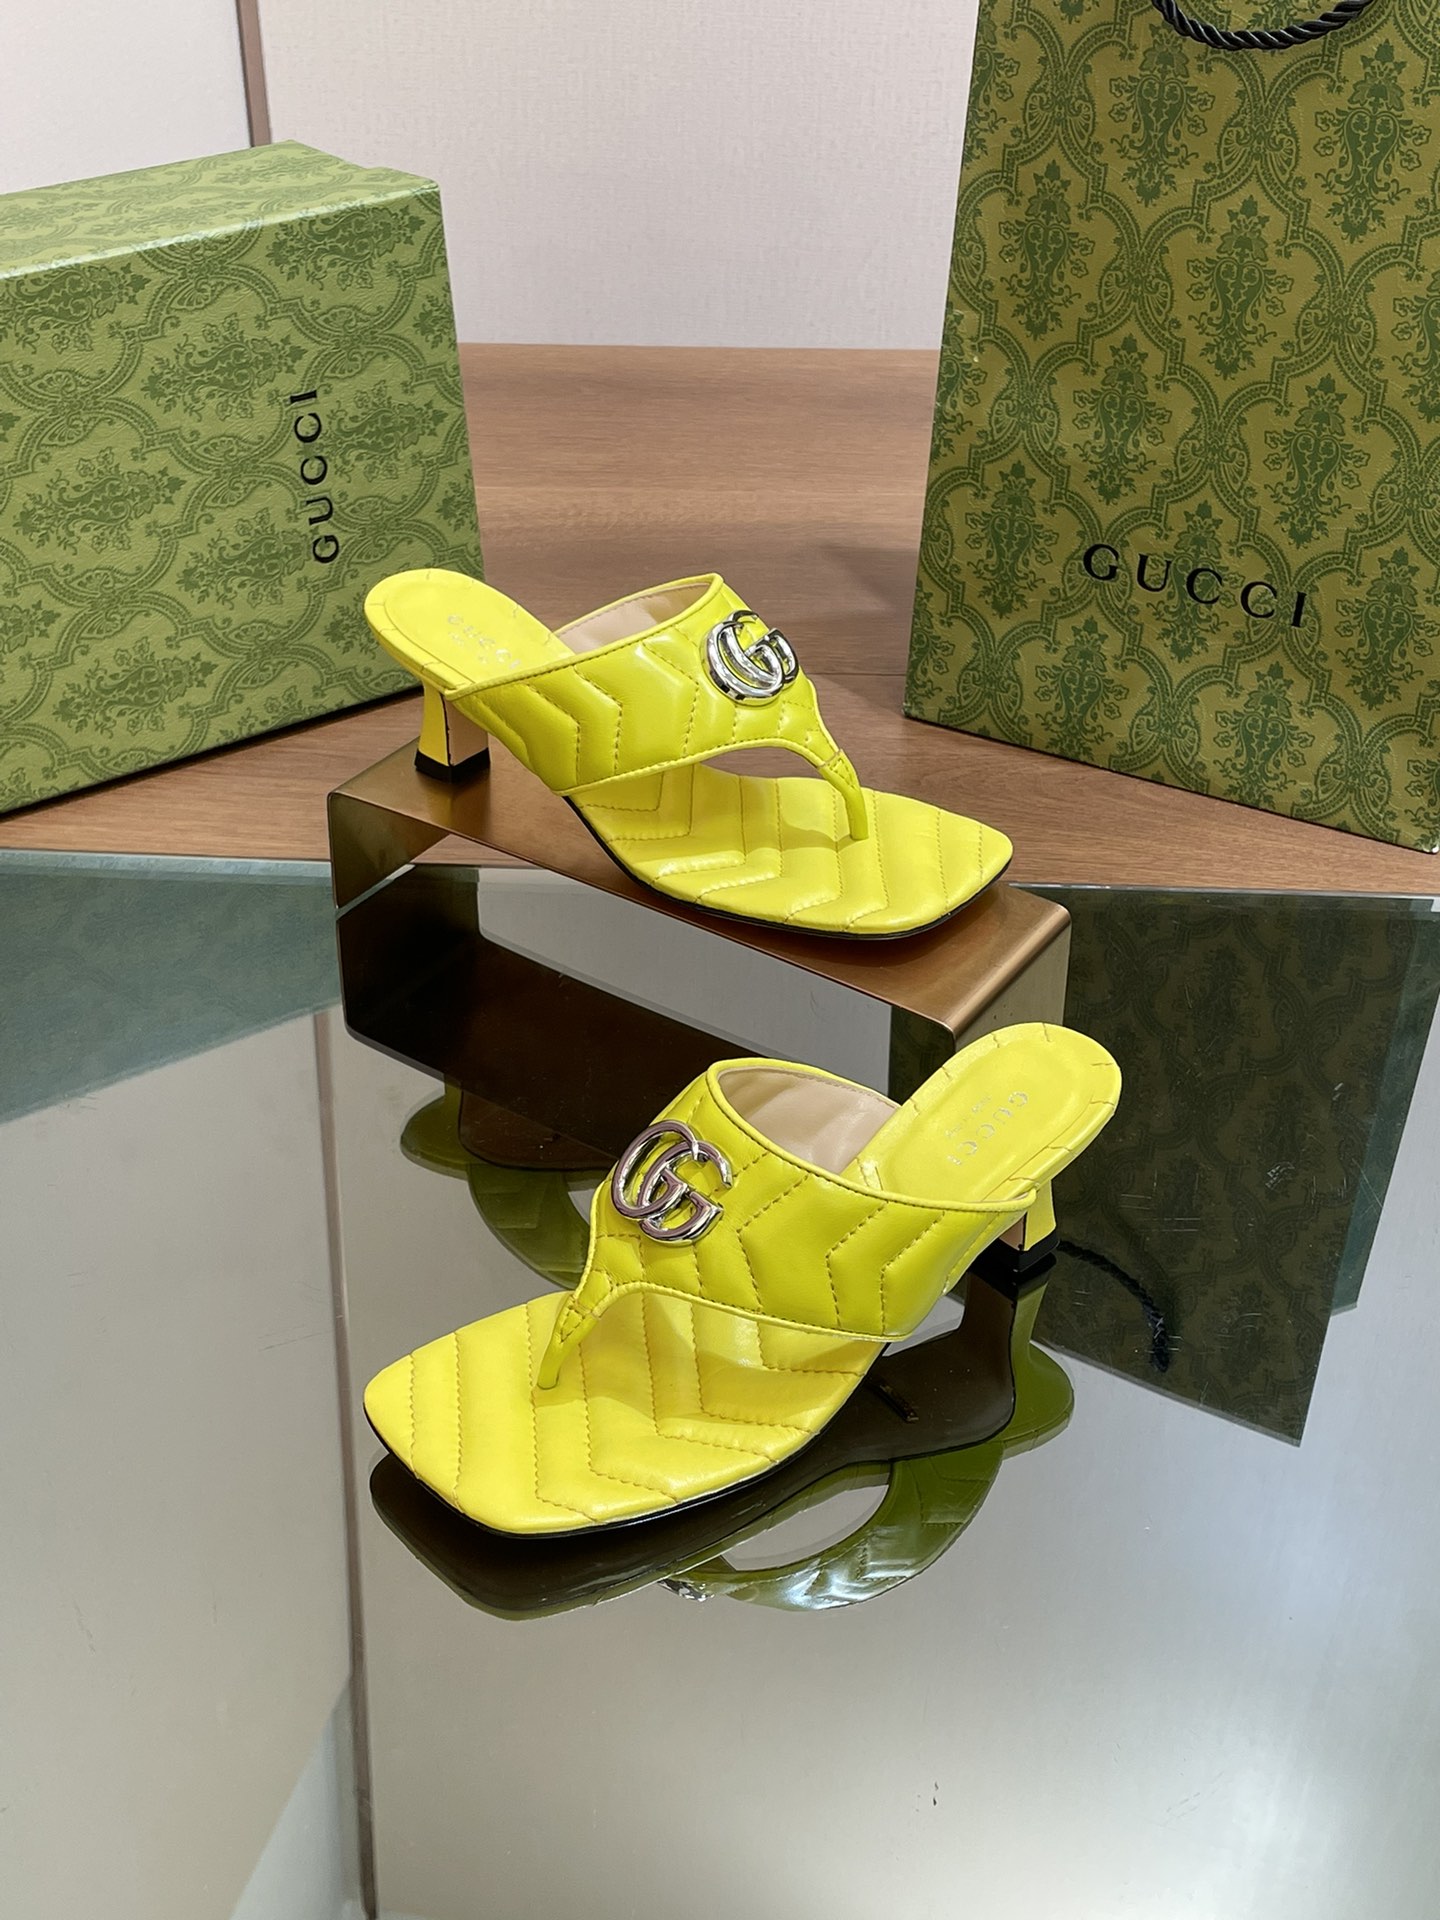 Gucci Scarpe Sandali Pantofole Oro Donne Cuoio genuino Pelle di pecora Collezione estiva